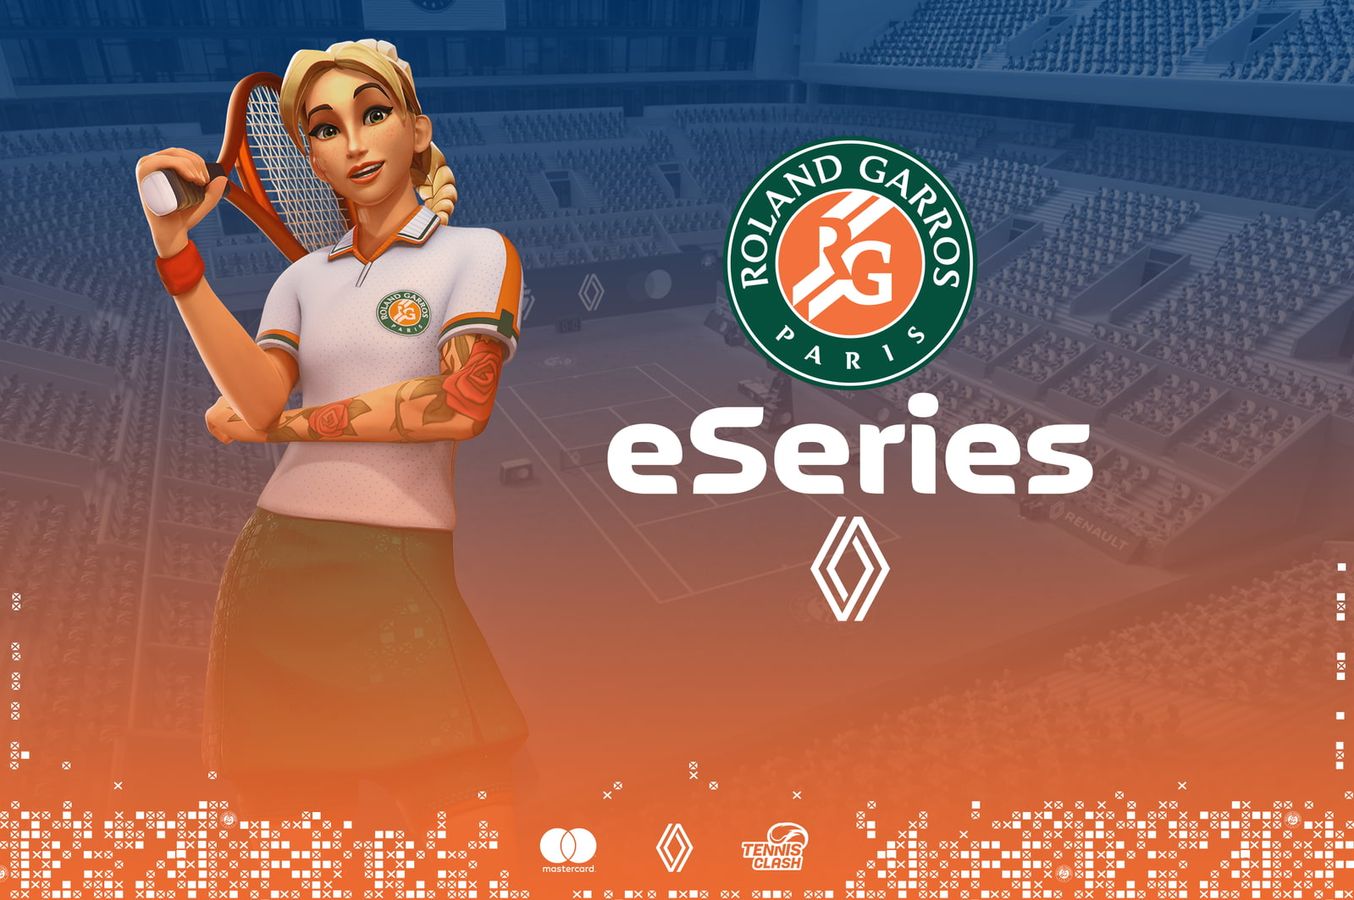 Roland-Garros eSeries Cover